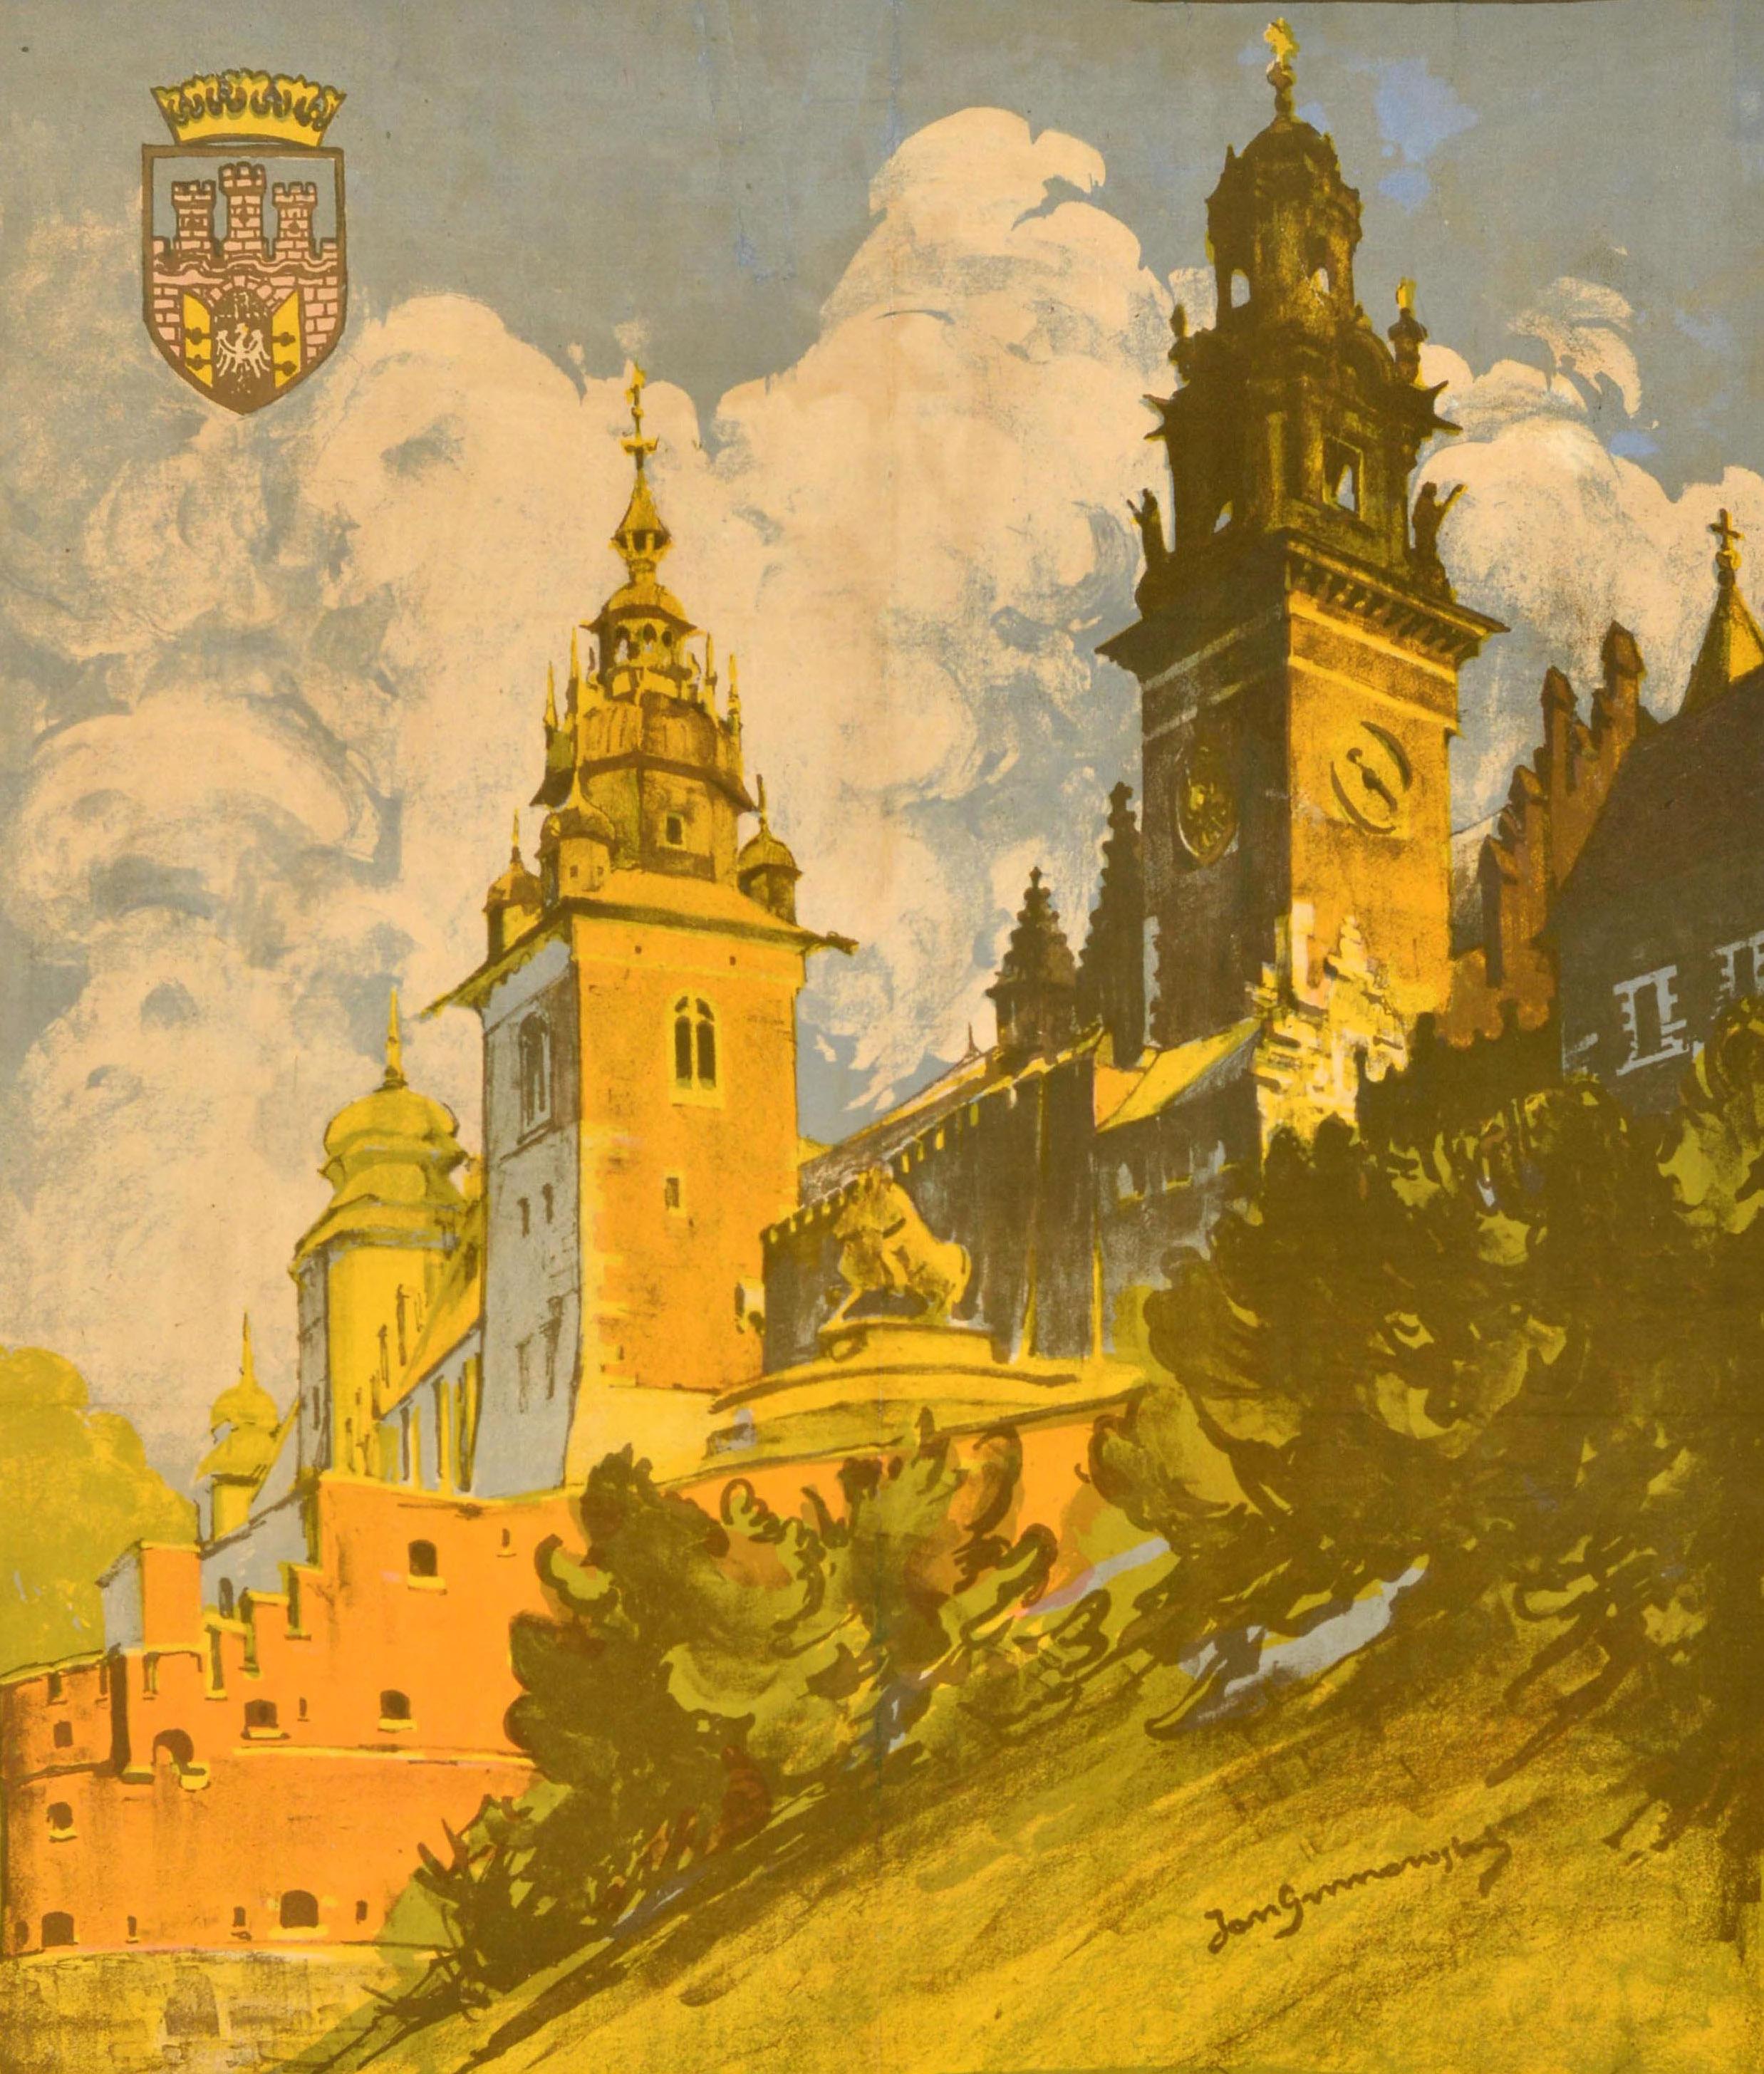 Originales antikes Reiseplakat für Krakau / Krakow in Polen mit einer Abbildung des historischen Königsschlosses Wawel aus dem 14. Jahrhundert in der mittelalterlichen Altstadt (seit 1978 UNESCO-Weltkulturerbe) mit dem unten stehenden Text in